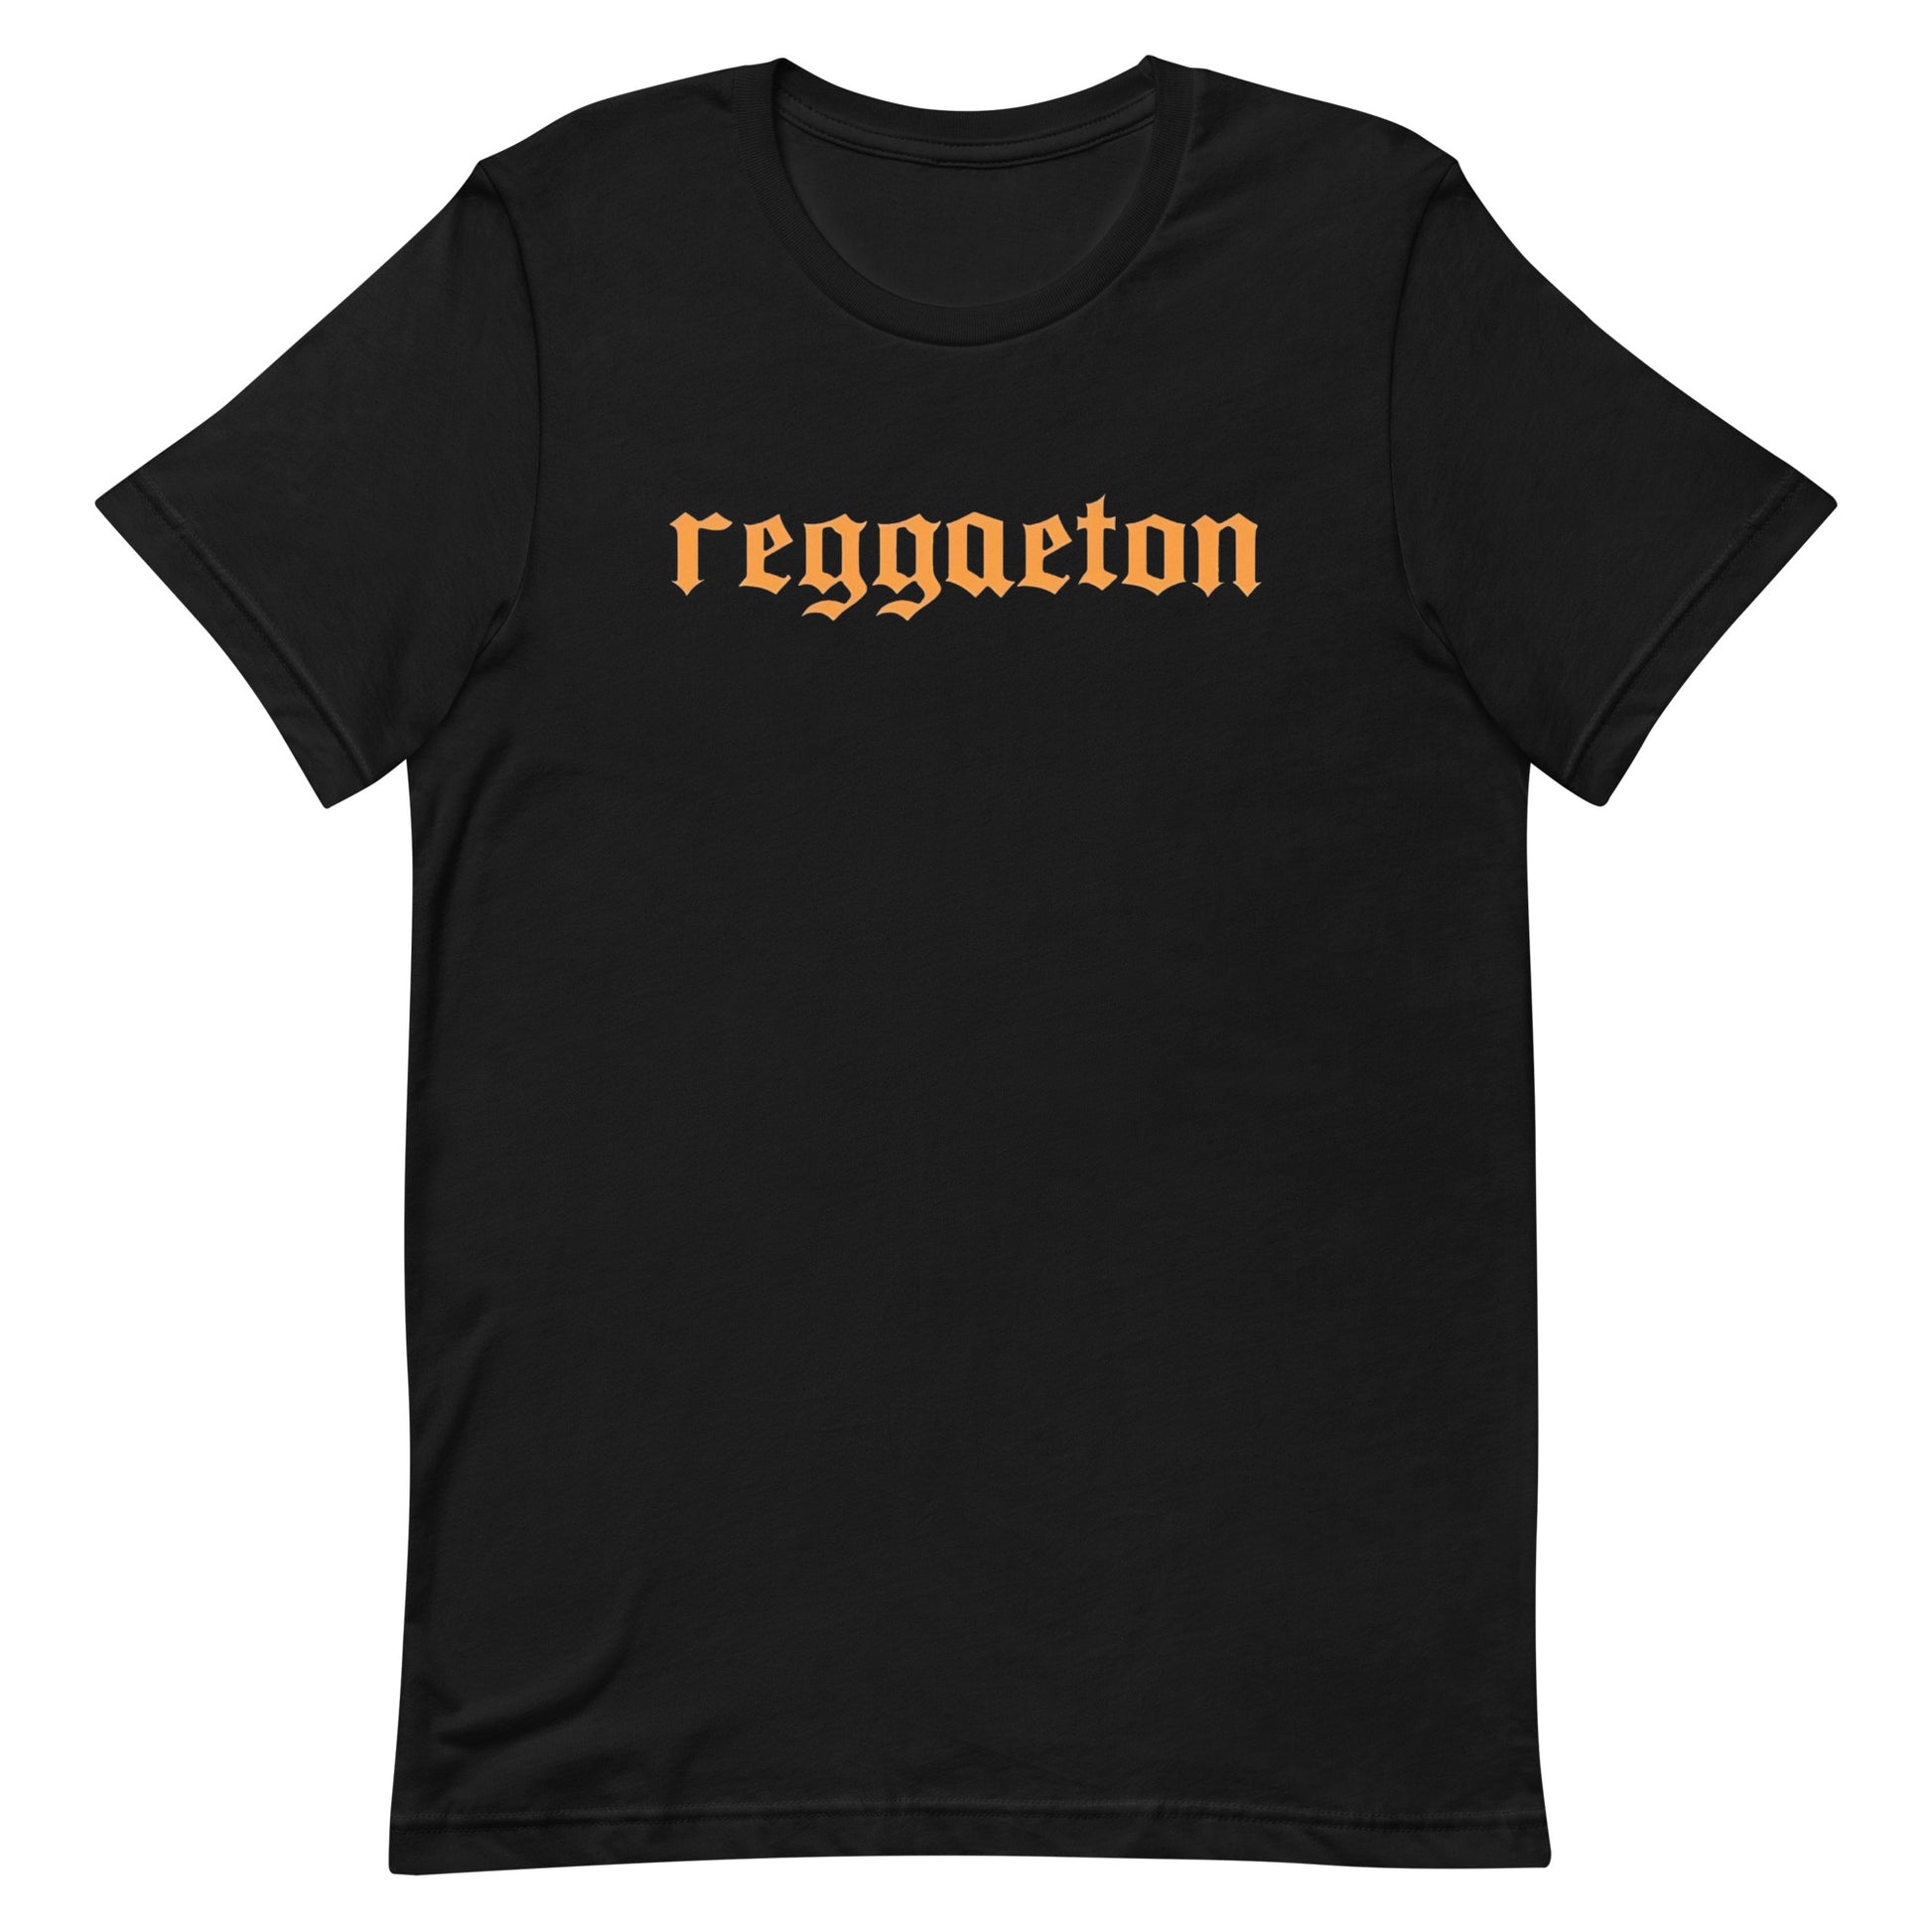 Camiseta Reggaeton: Descubre calidad excepcional y estampados duraderos. Encuentra estilo y orgullo en cada prenda.